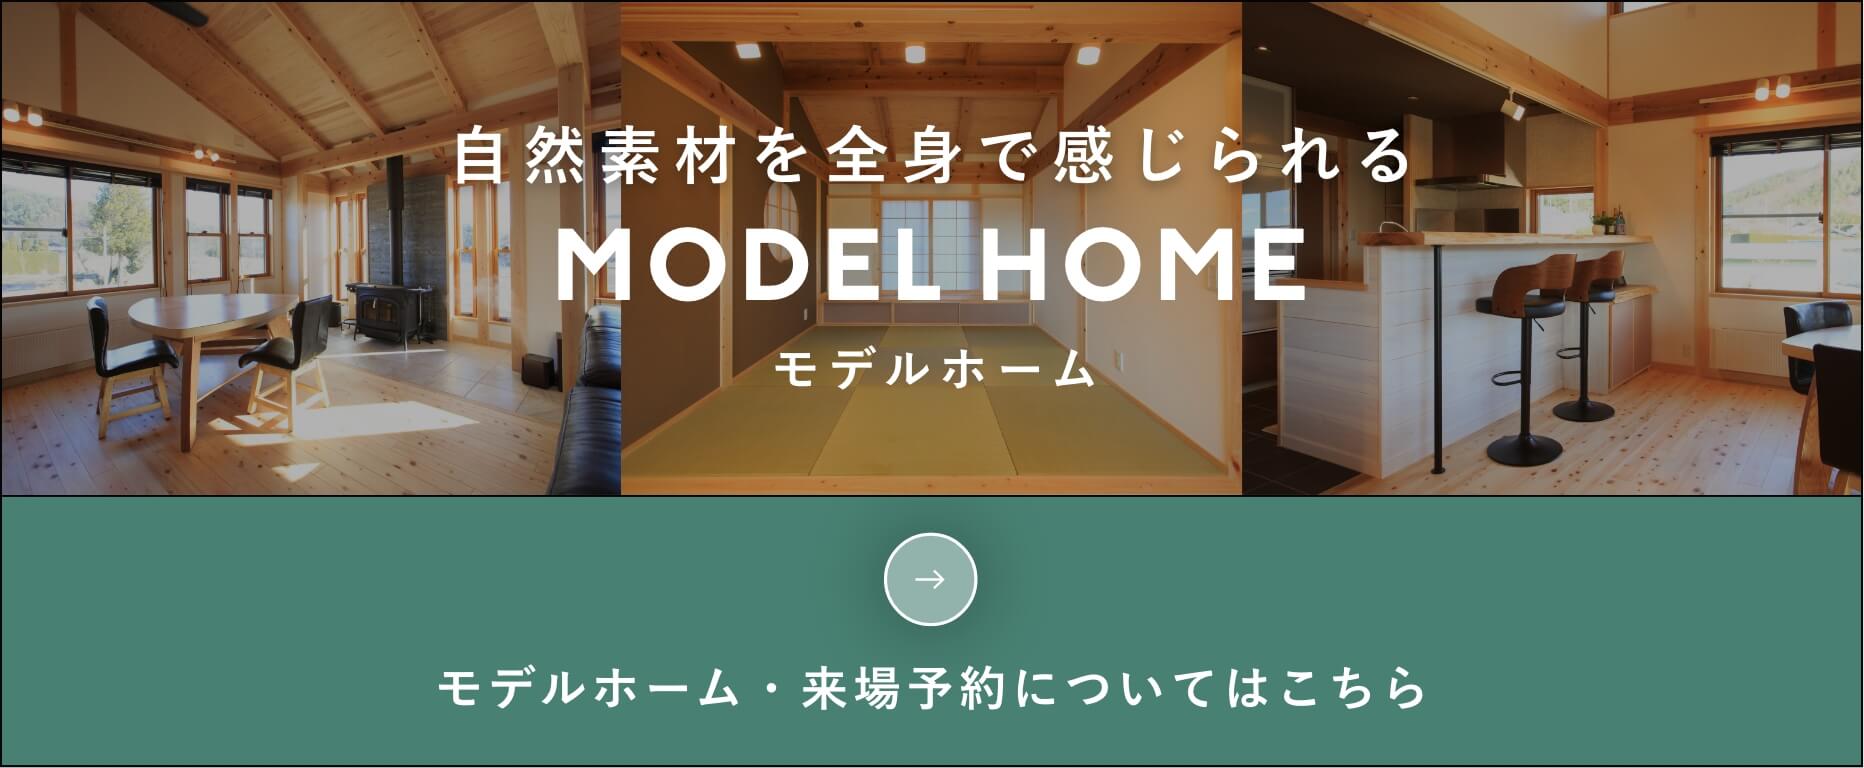 自然素材を全身で感じられる　MODELHOMEモデルホーム モデルホーム・来場予約についてはこちら